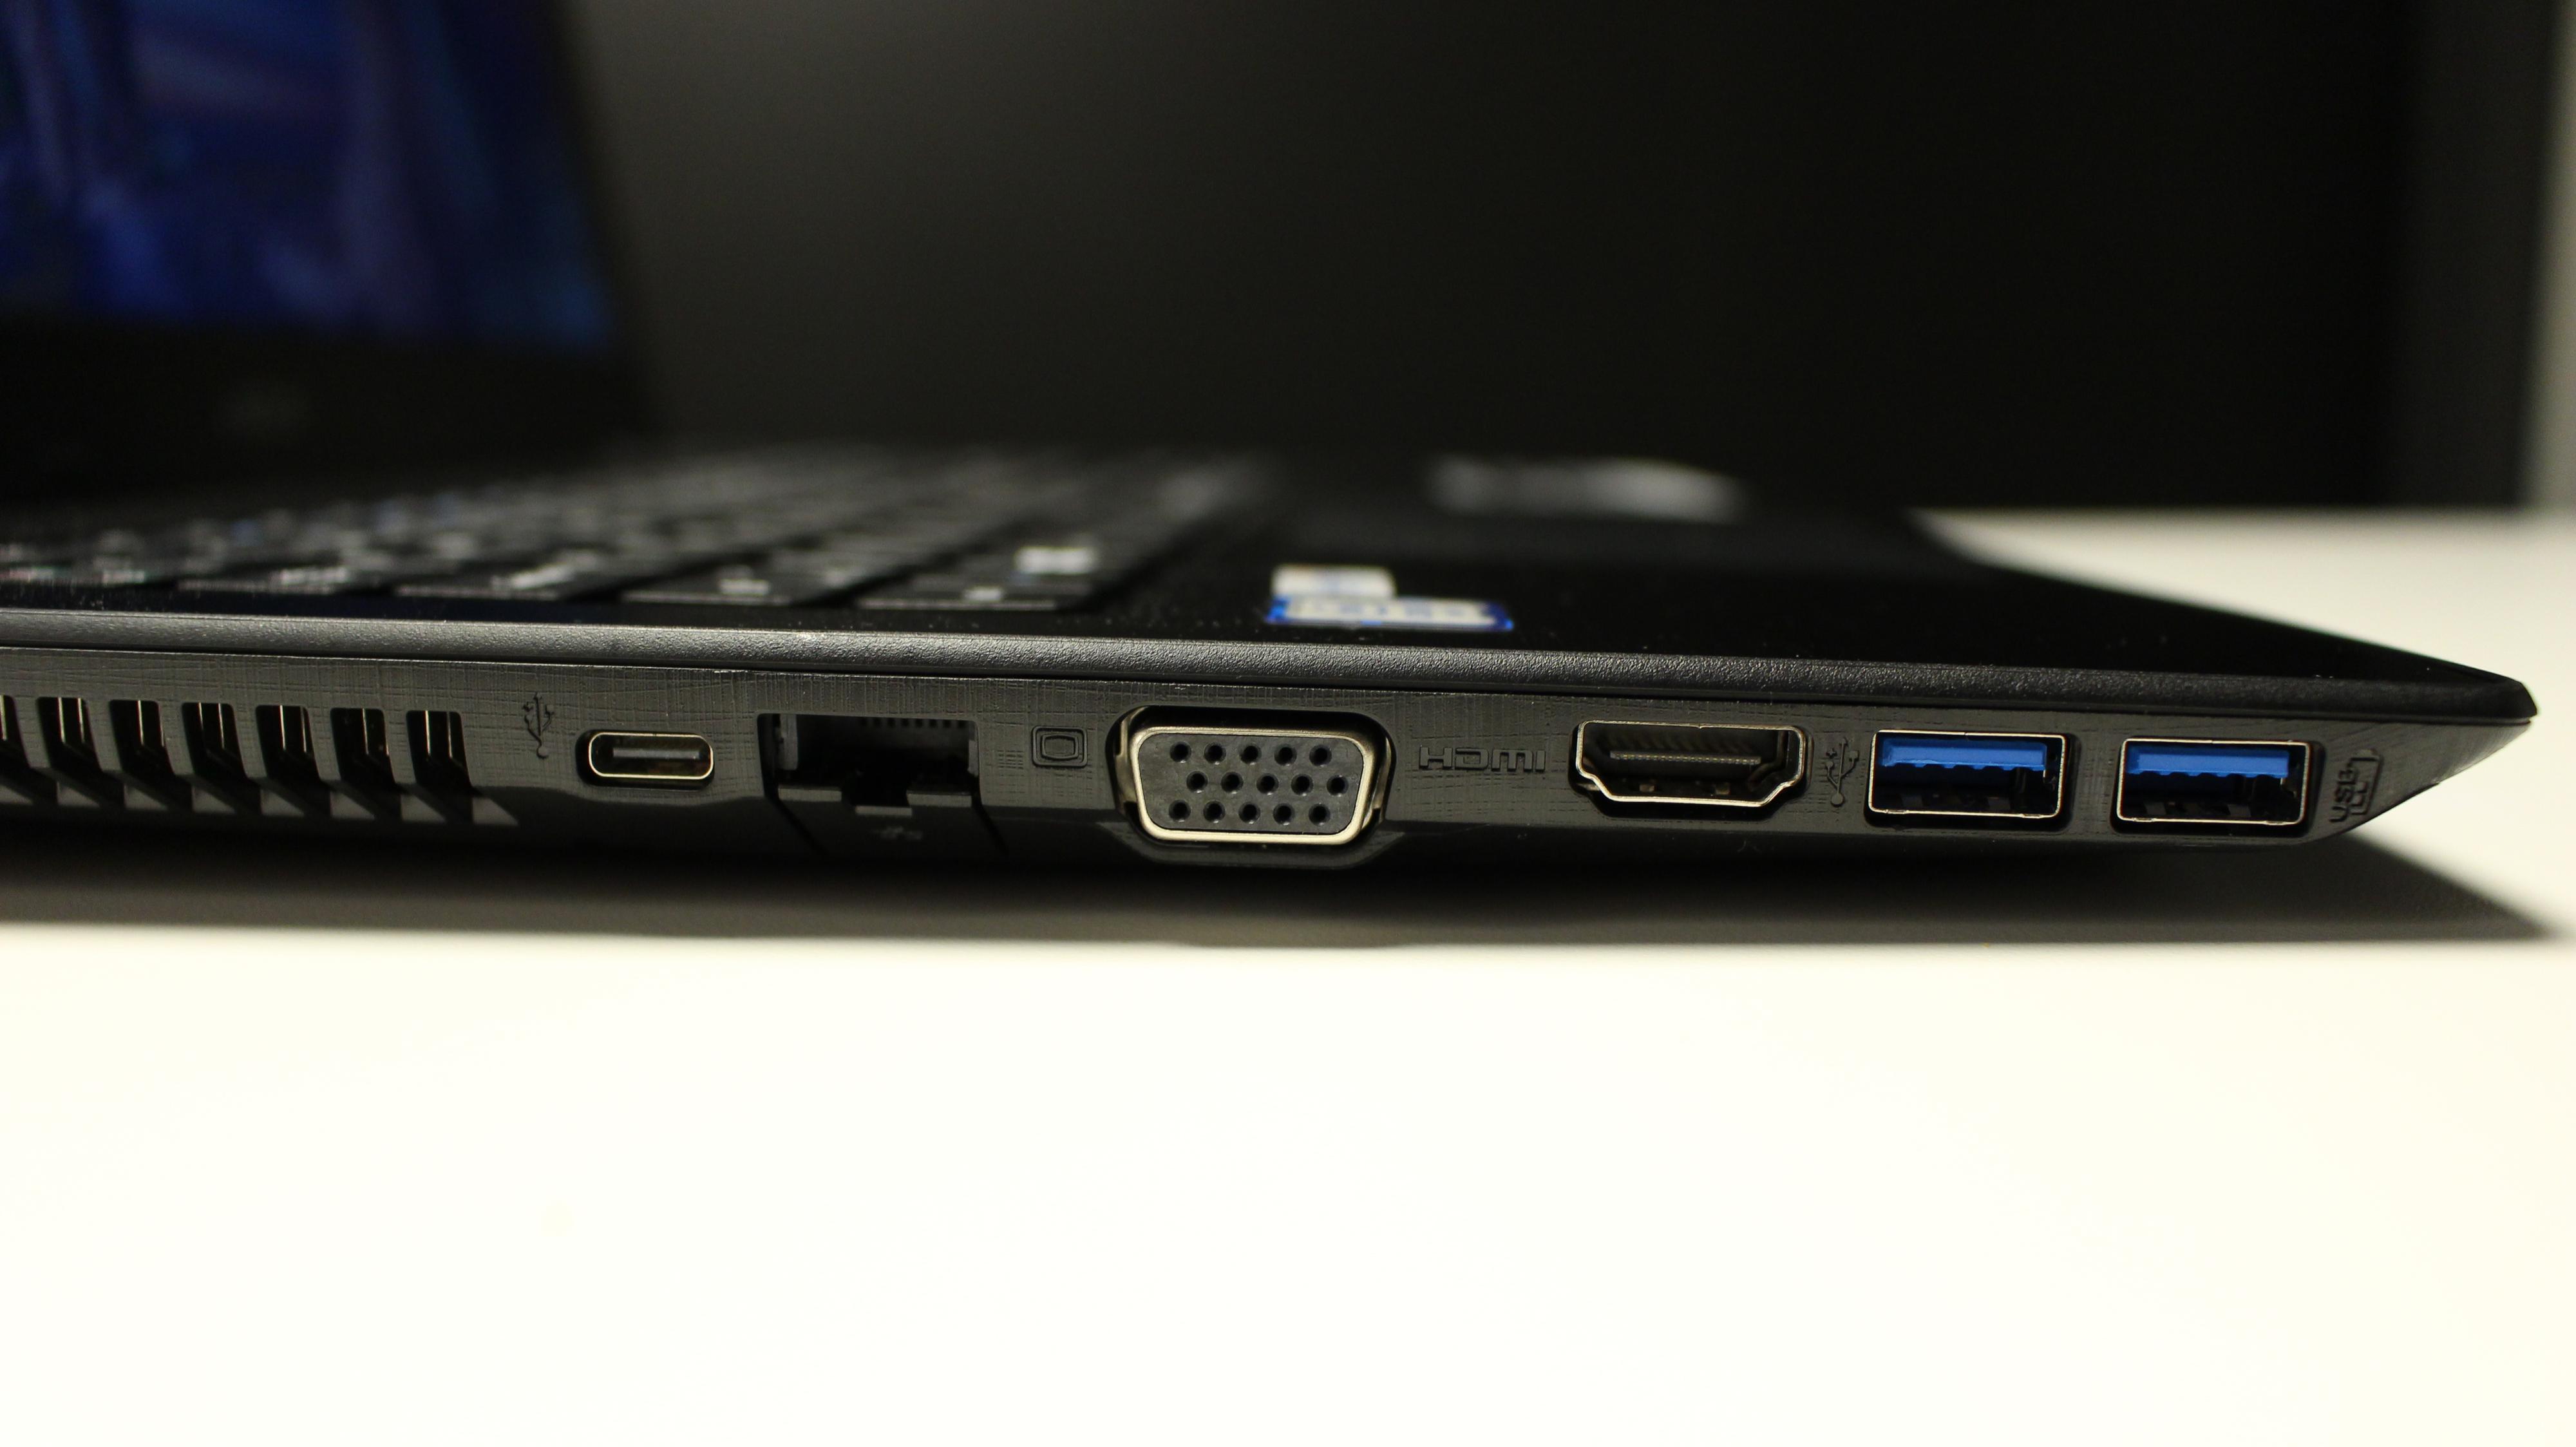 Acer E5 har gode tilkoblingsmuligheter: To USB 3.0-porter, én USB 2.0 port, inngang for HDMI og VGA samt støtte for minnekort av typen SD, SDHC og SDXC, i tillegg til kombinert port for hodetelefoner og mikrofon.